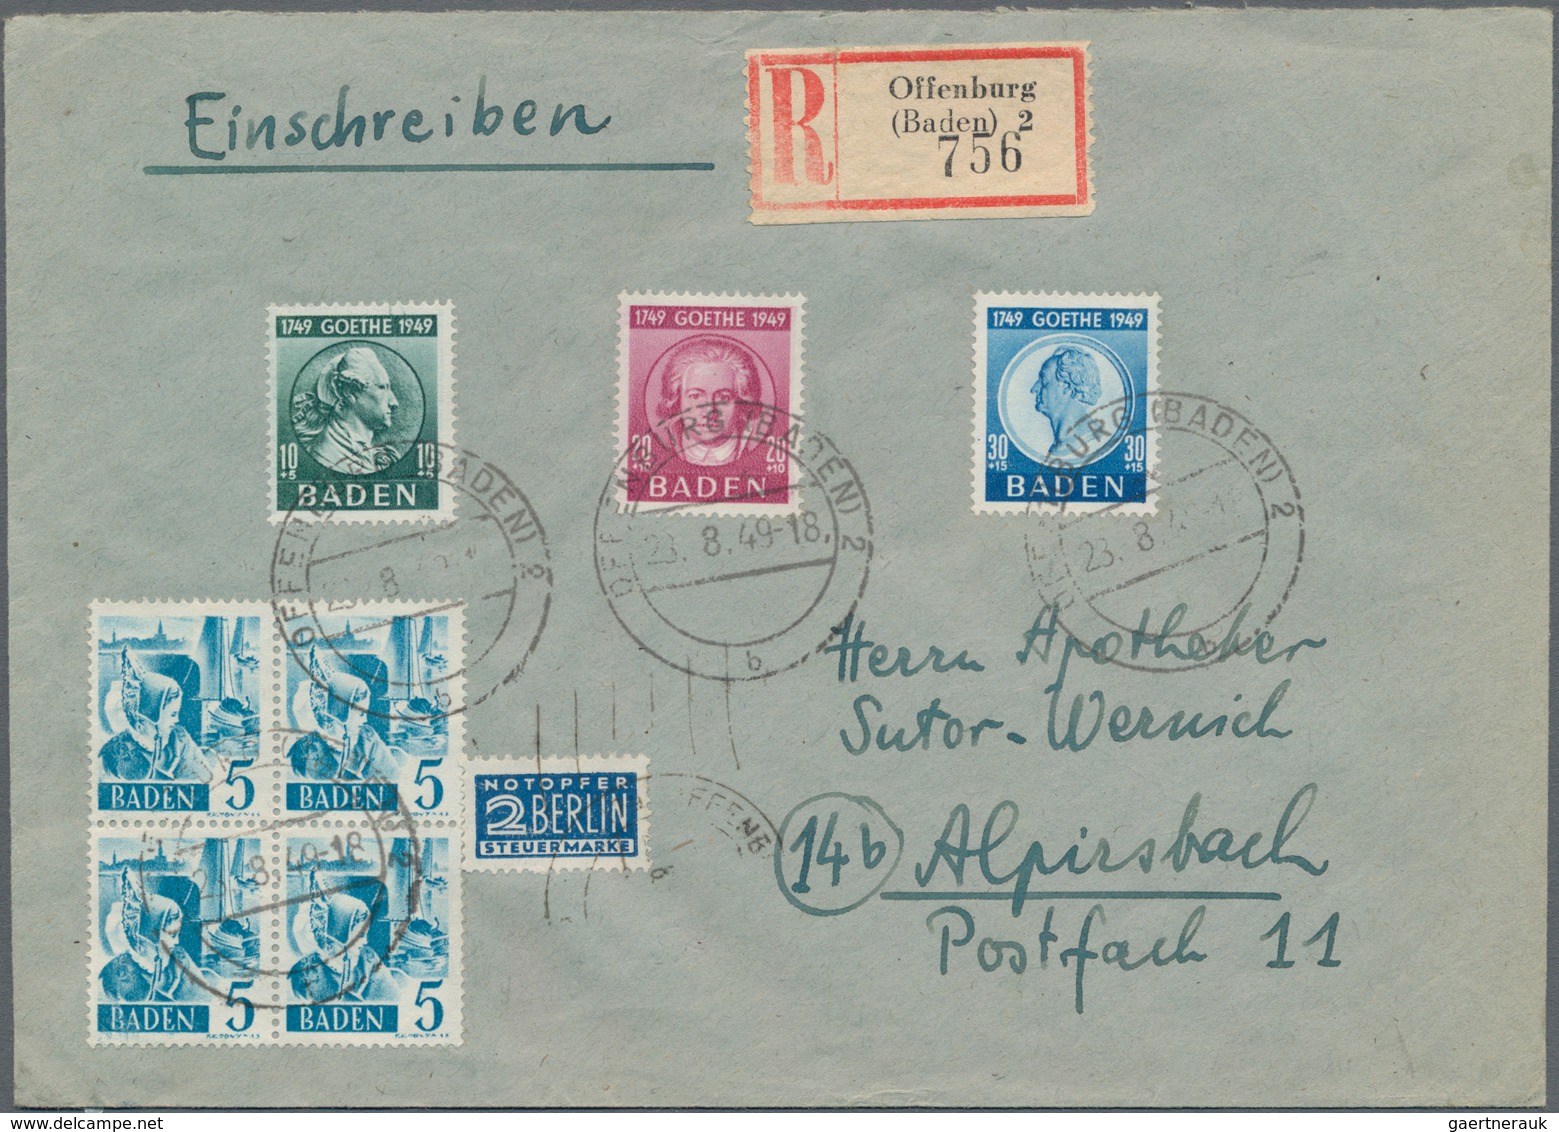 Französische Zone - Baden: 1946/1949, Partie von 43 Briefen/Karten mit Frankaturen Freimarken und au